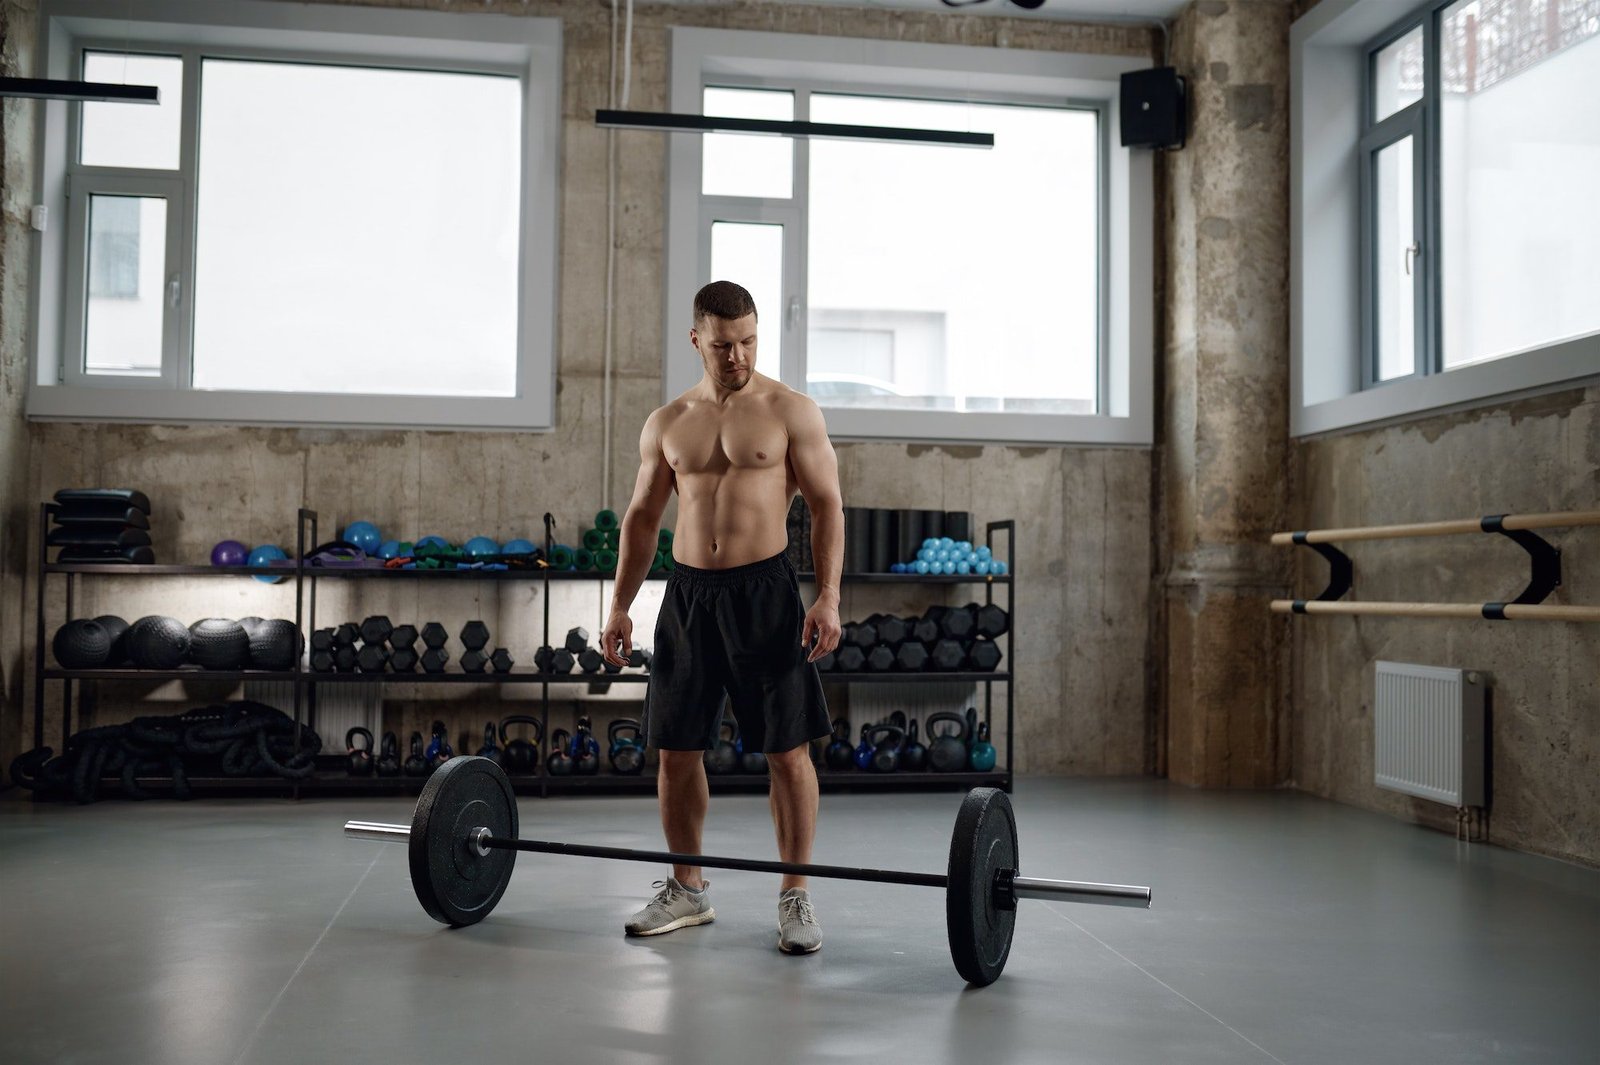 suplemento para aumentar la masa muscular, hombre exhibiendo sus musculos en el entrenamiento